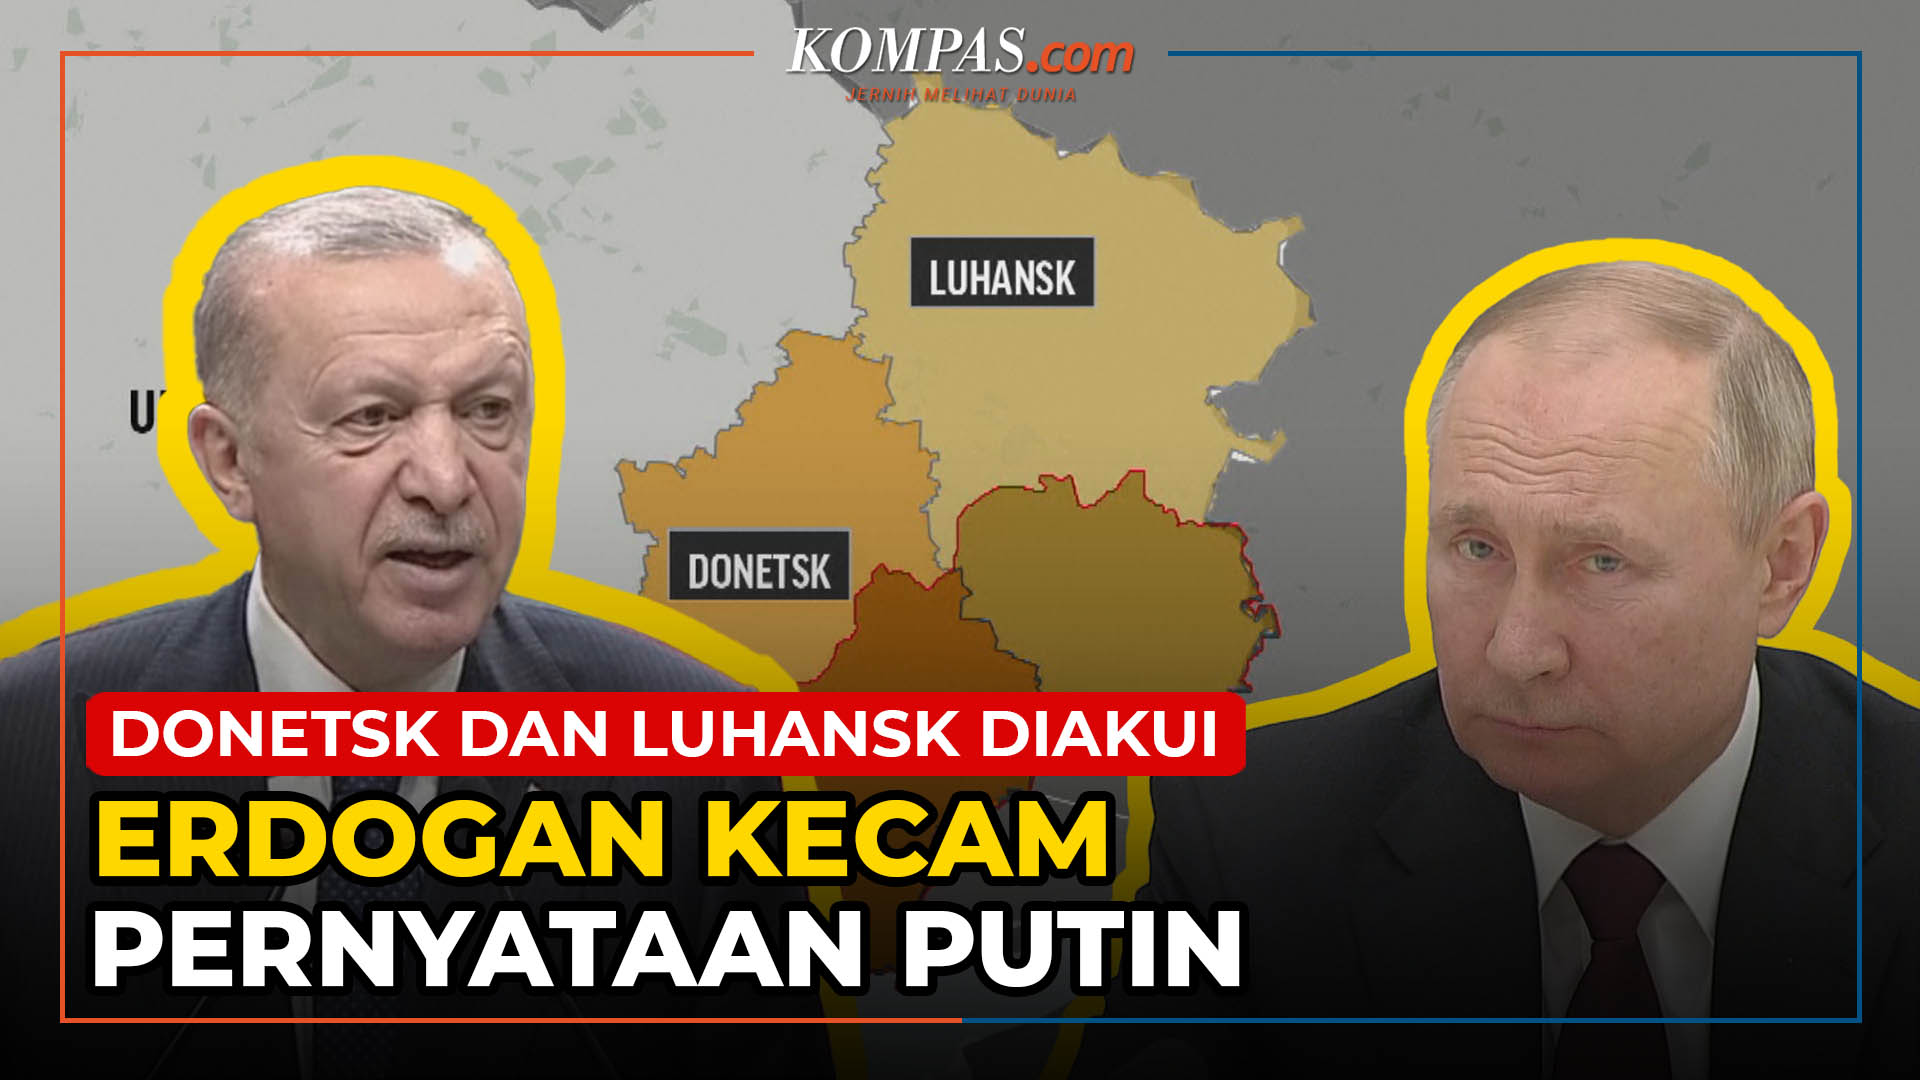 Erdogan Kecam Putin yang Akui Kemerdekaan Donetsk dan Luhansk